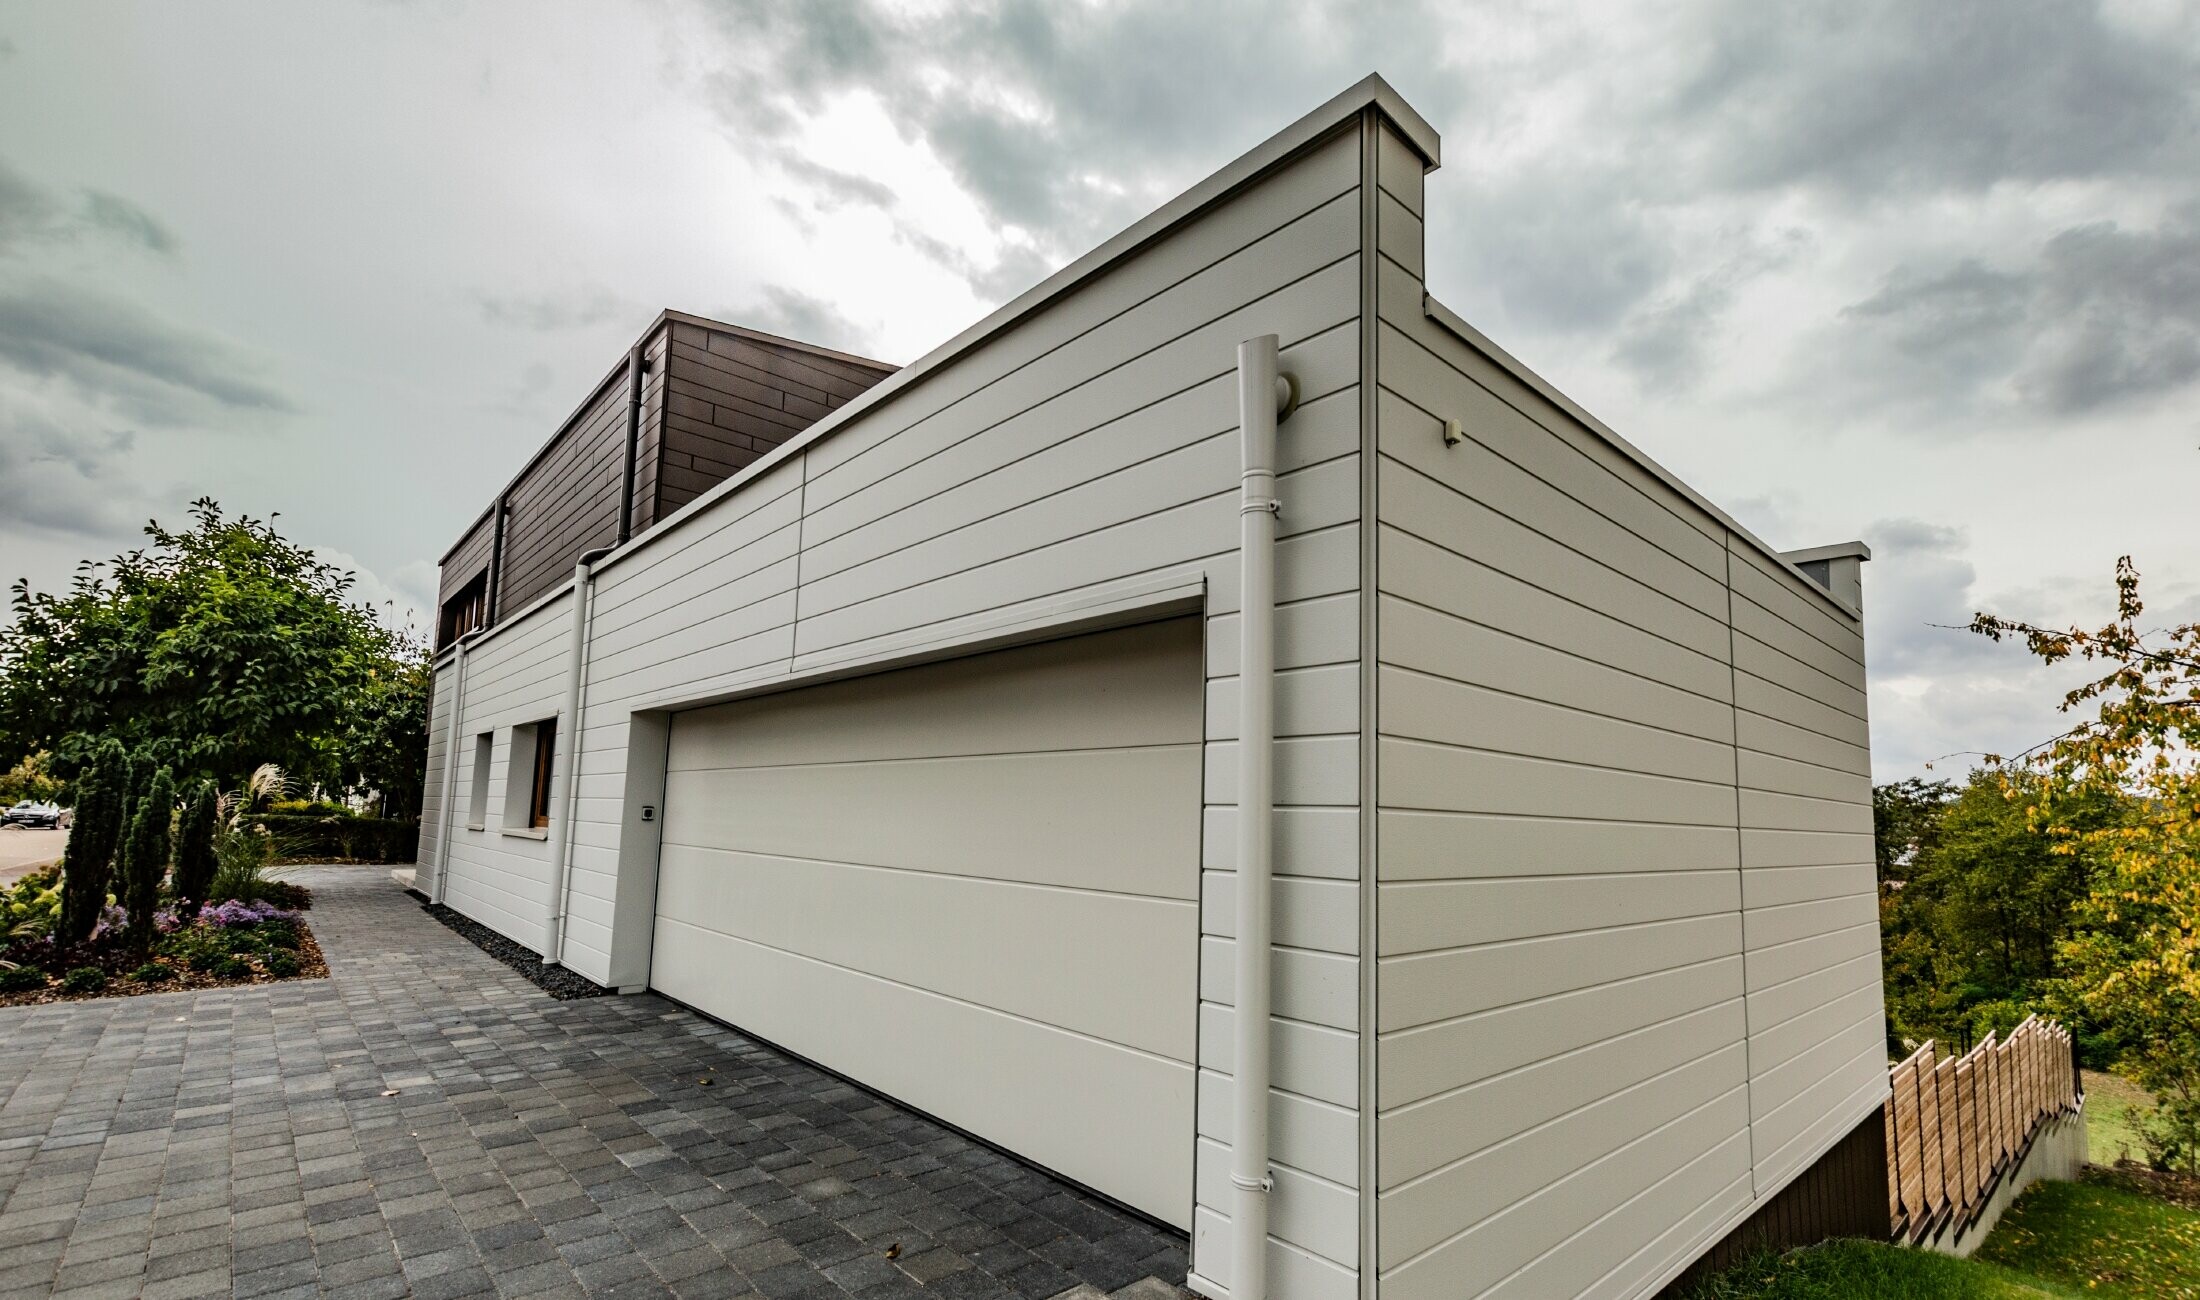 Habillage de garage avec le Siding PREFA en blanc posé à l’horizontale avec l’embranchement d’évacuation PREFA.